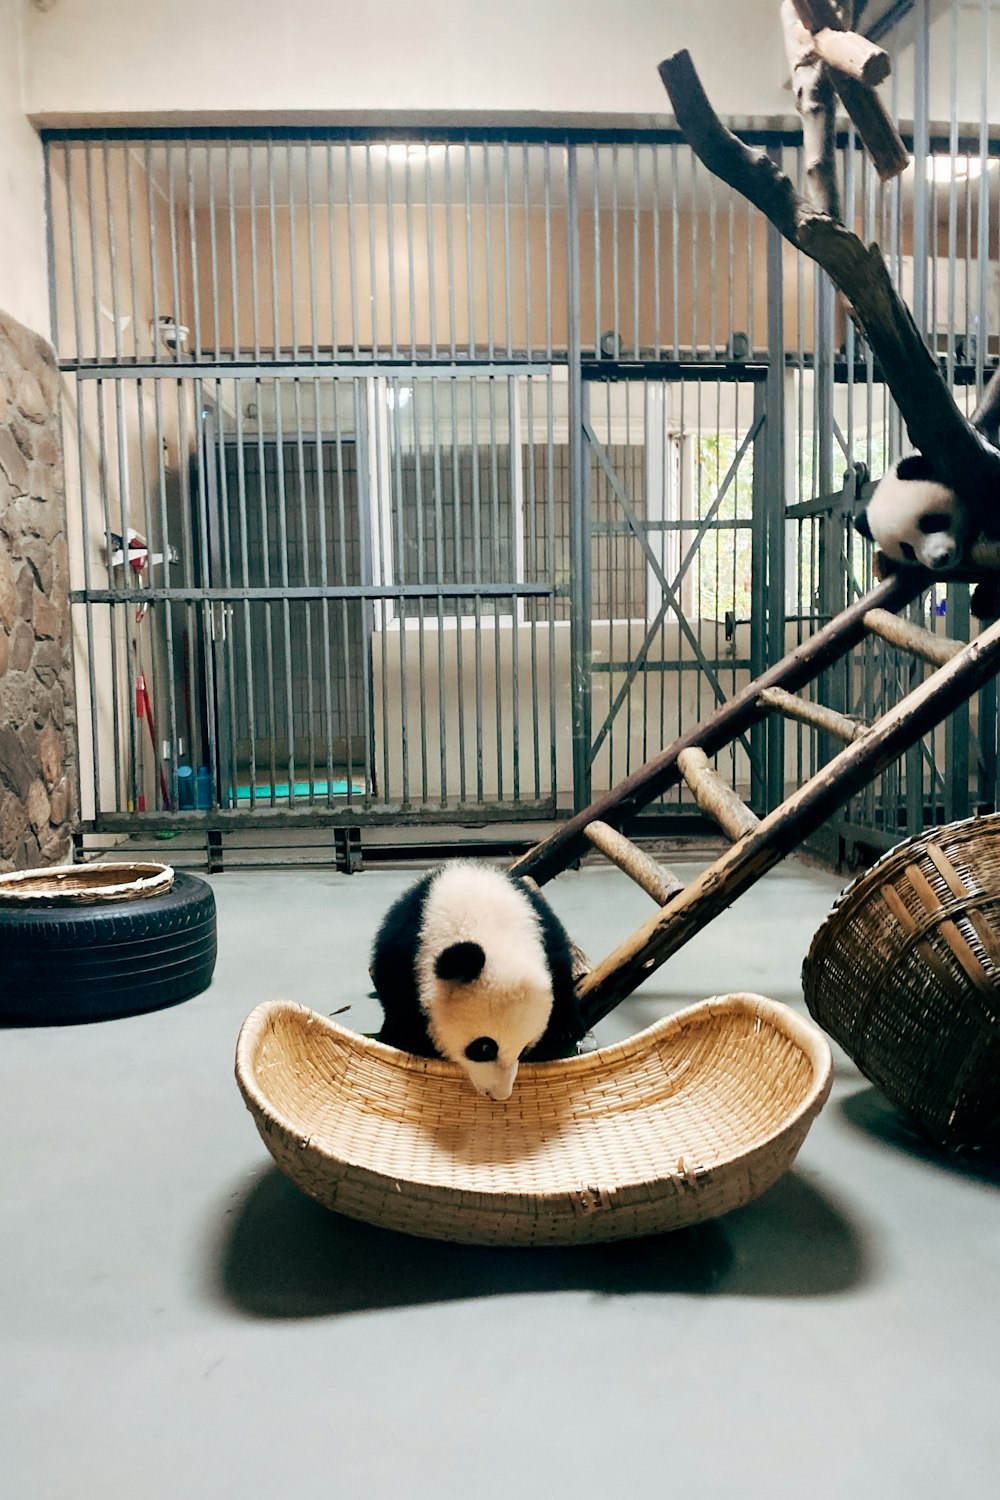 panda plush toy on brown wooden basket